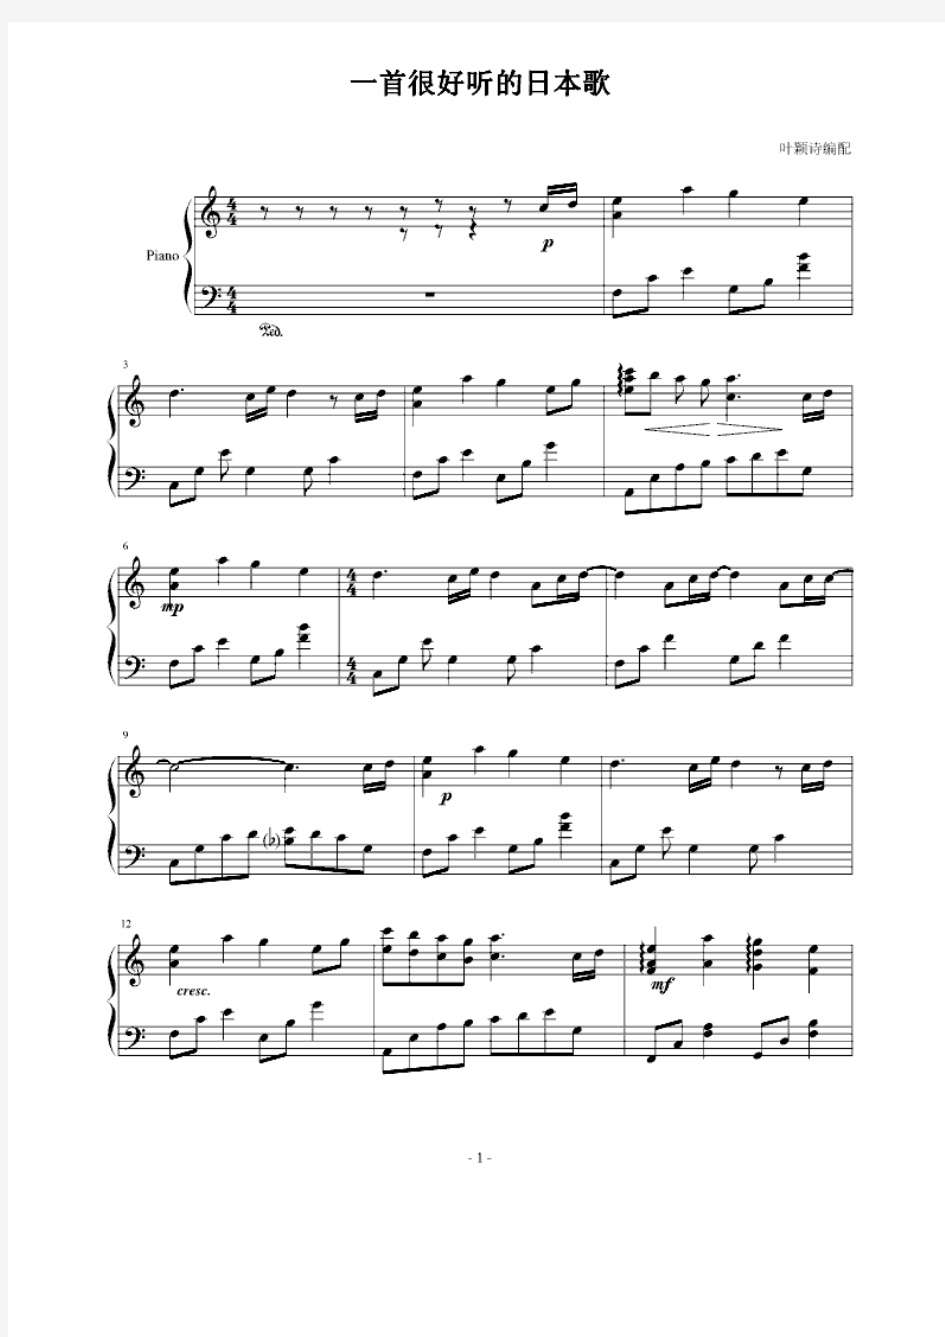 一首很好听的日本歌 正谱 钢琴谱 五线谱 乐谱.pdf